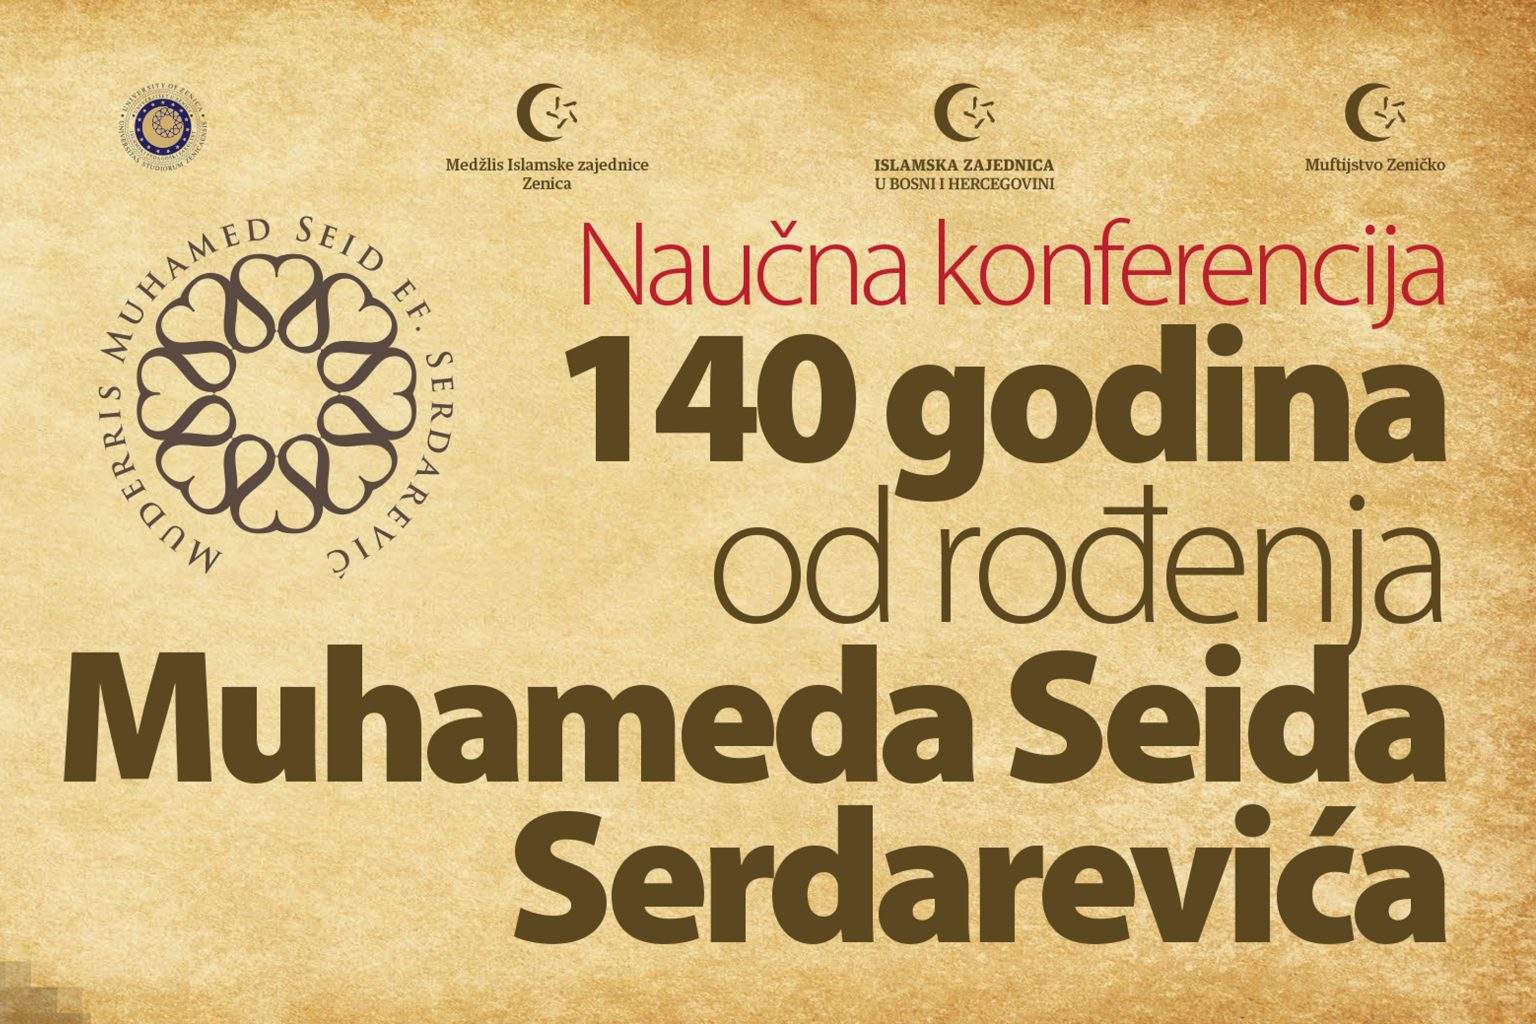 Naslovna-konferencija-1536x1024.jpg - Naučna konferencija povodom 140 godina od rođenja Muhameda Seida Serdarevića 19. novembra